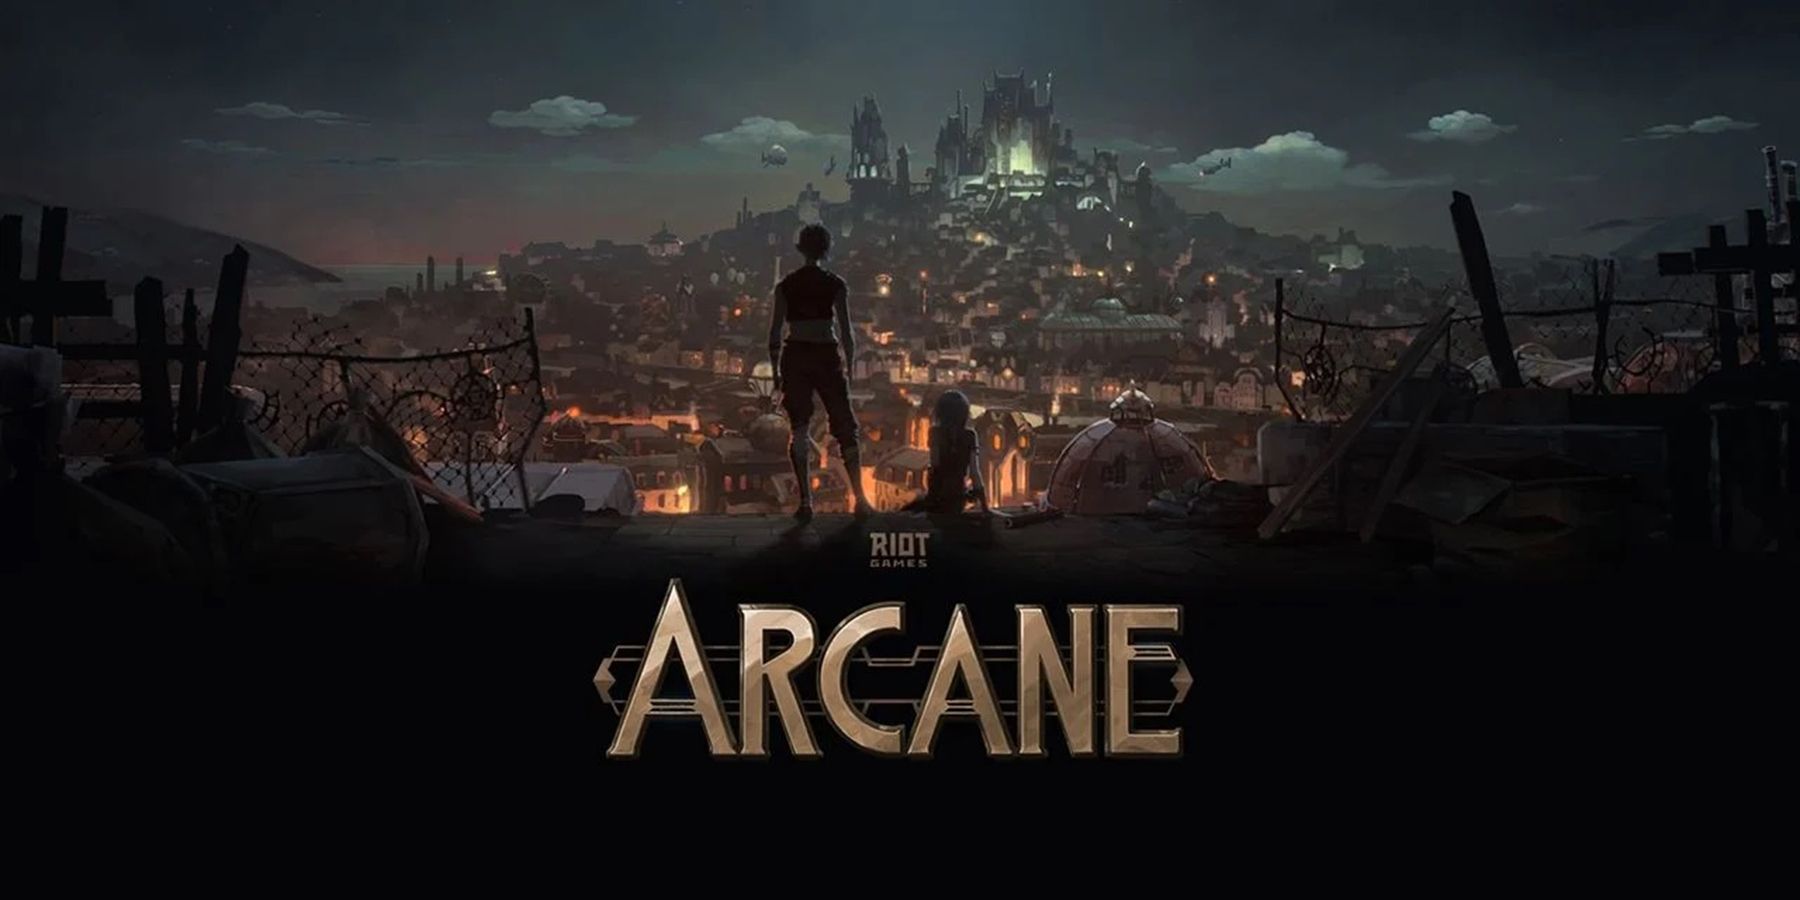 يقدم Arcane Trailer لمحة عن سلسلة Netflix’s League of Legends